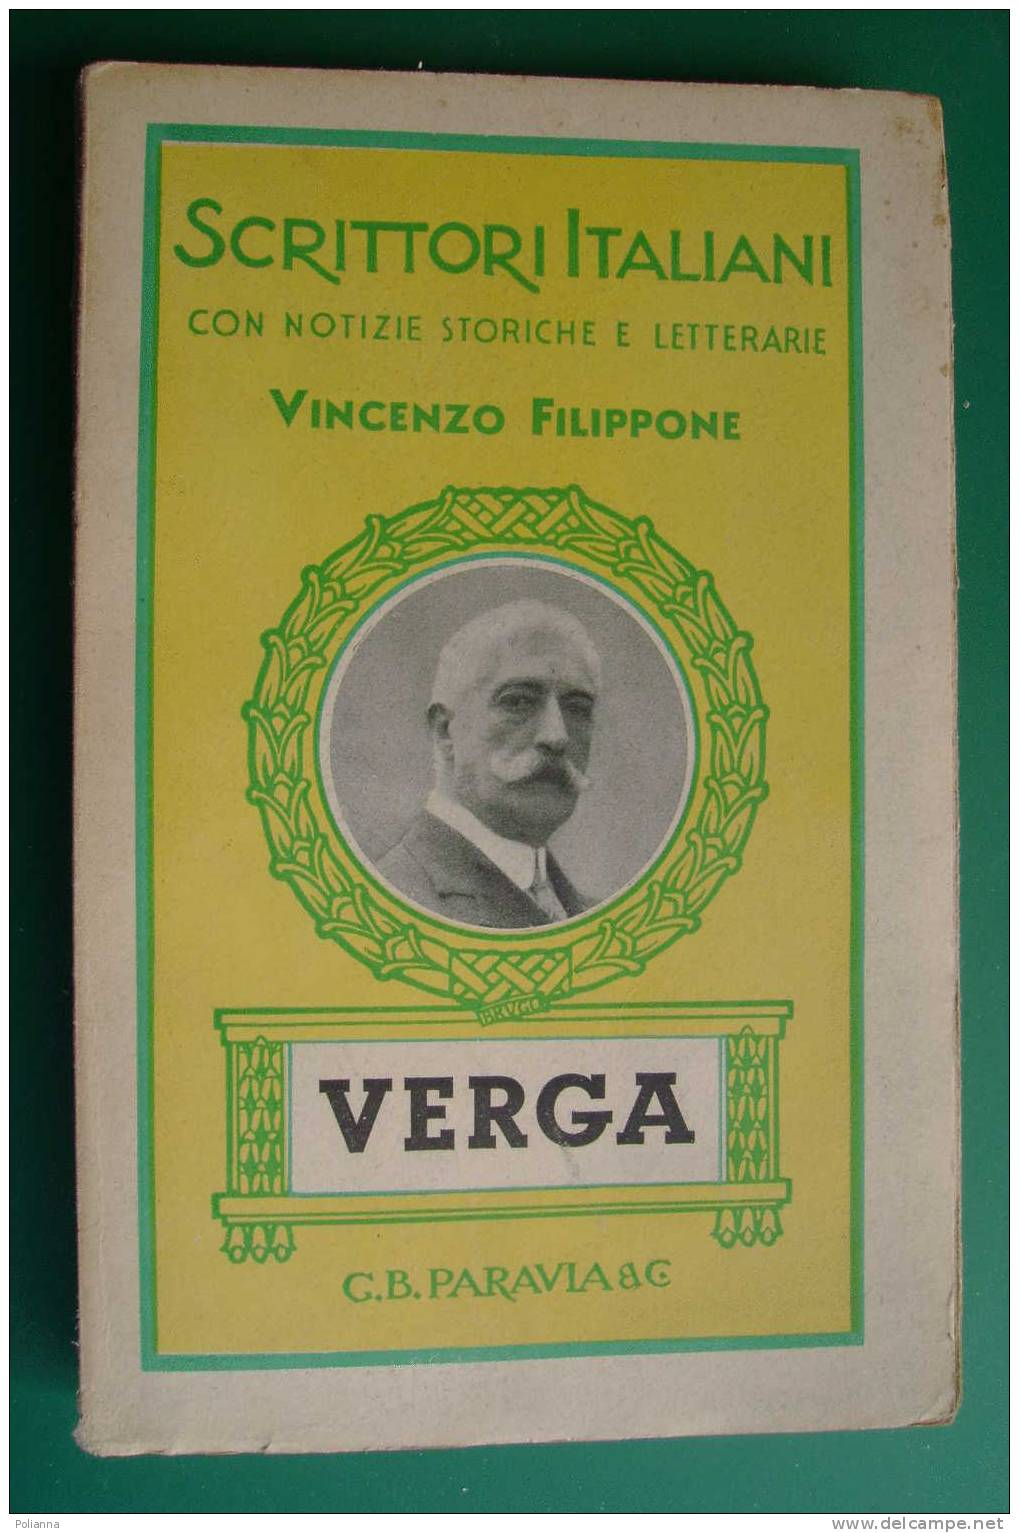 PDD/35 Scrittori Italiani - Vincenzo Filippone - VERGA  Paravia 1942 - Old